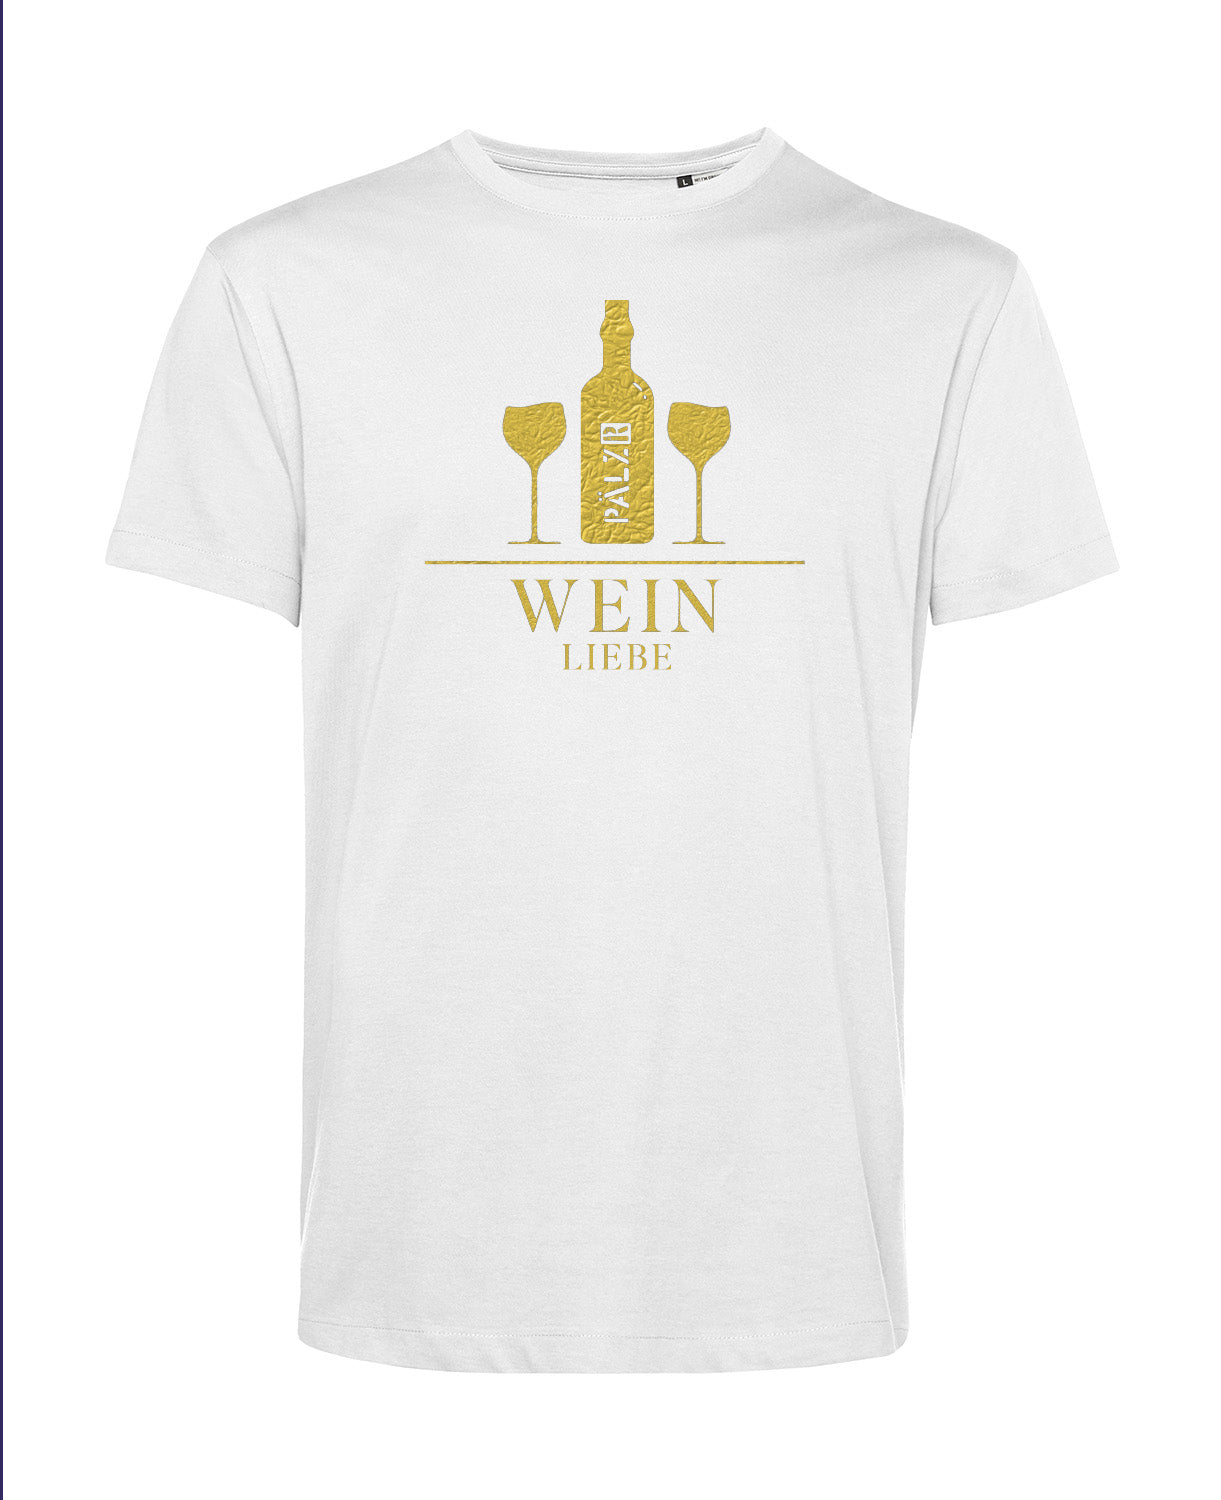 Männer | T-Shirt | Weinliebe | weiss | Logo gold